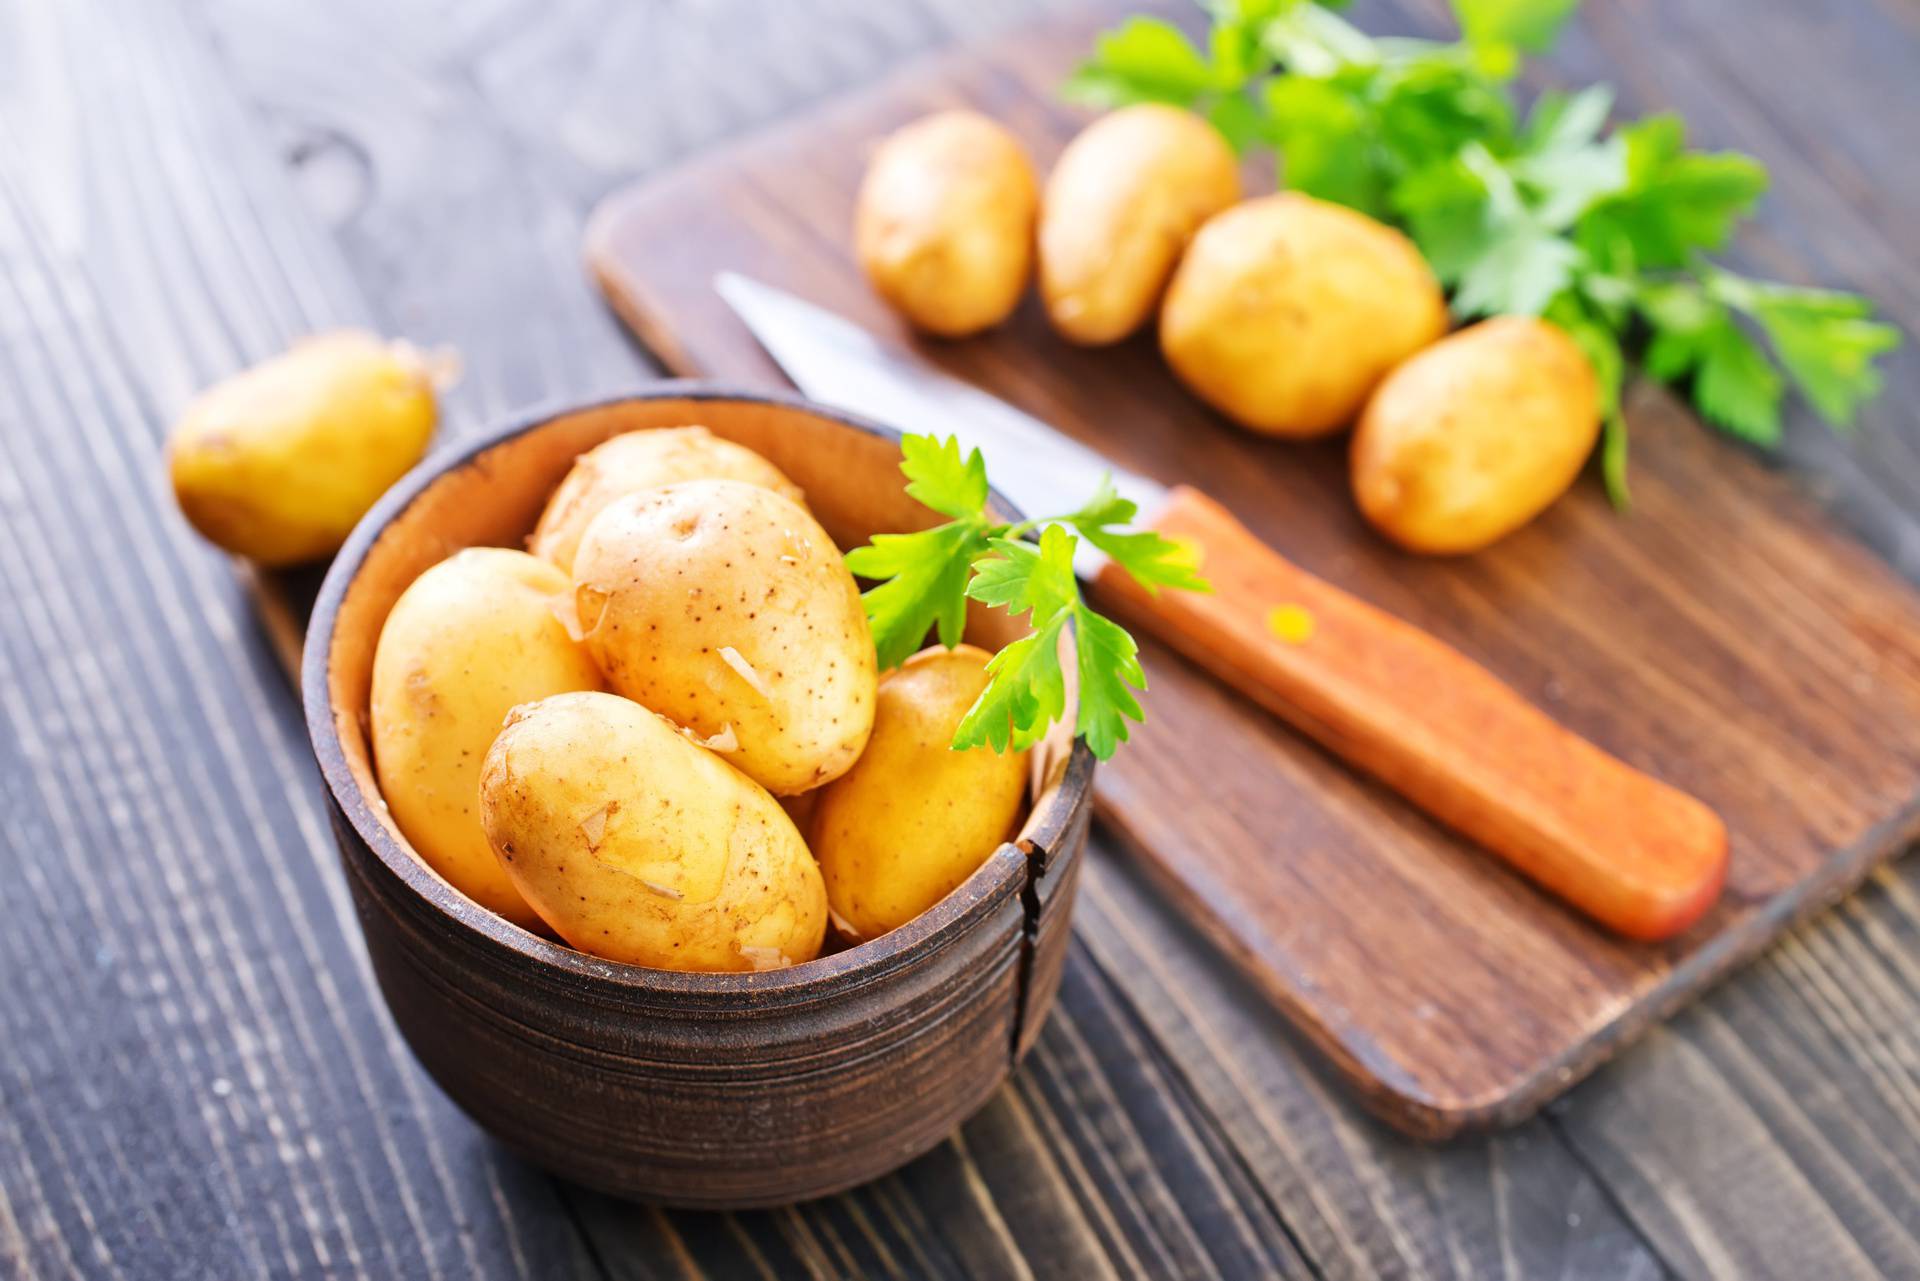 Dobro pogledajte u tanjur: Evo kakav krumpir može biti opasan